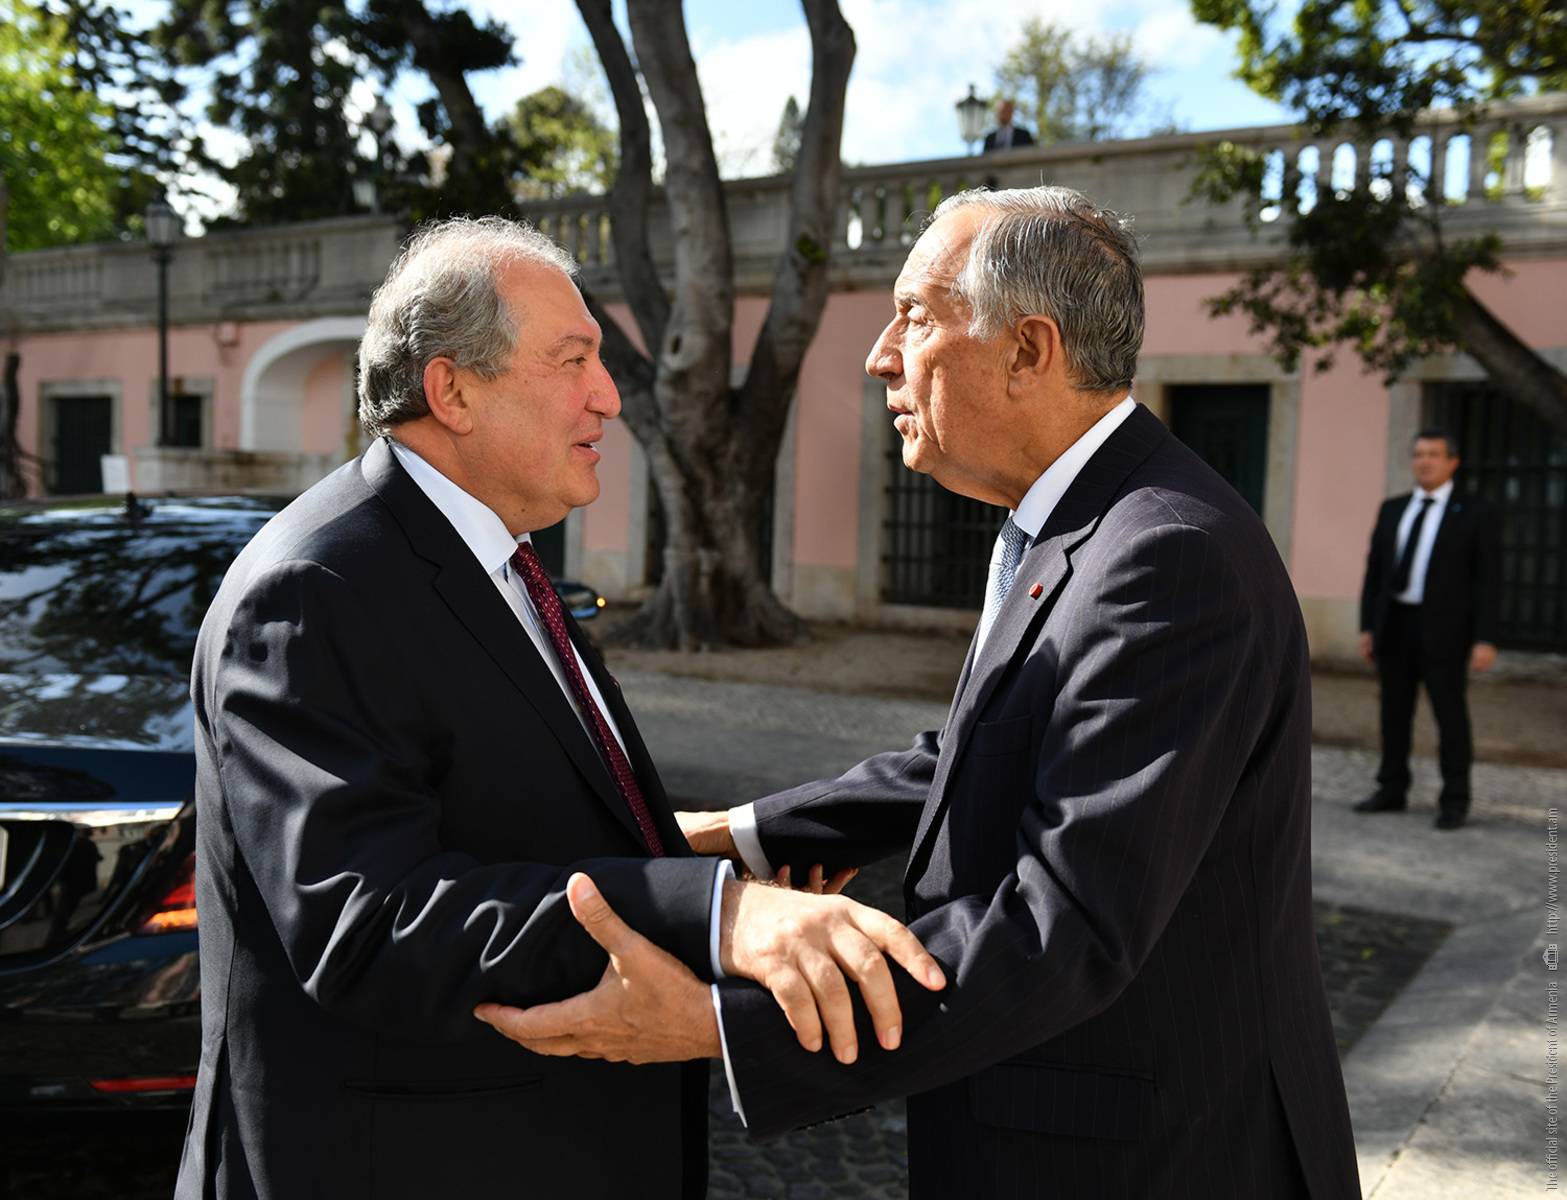 Նախագահ Արմեն Սարգսյանը շնորհավորել է Մարսելու Ռեբելու Դե Սոուզային՝ Պորտուգալիայի նախագահի պաշտոնում վերընտրվելու առթիվ